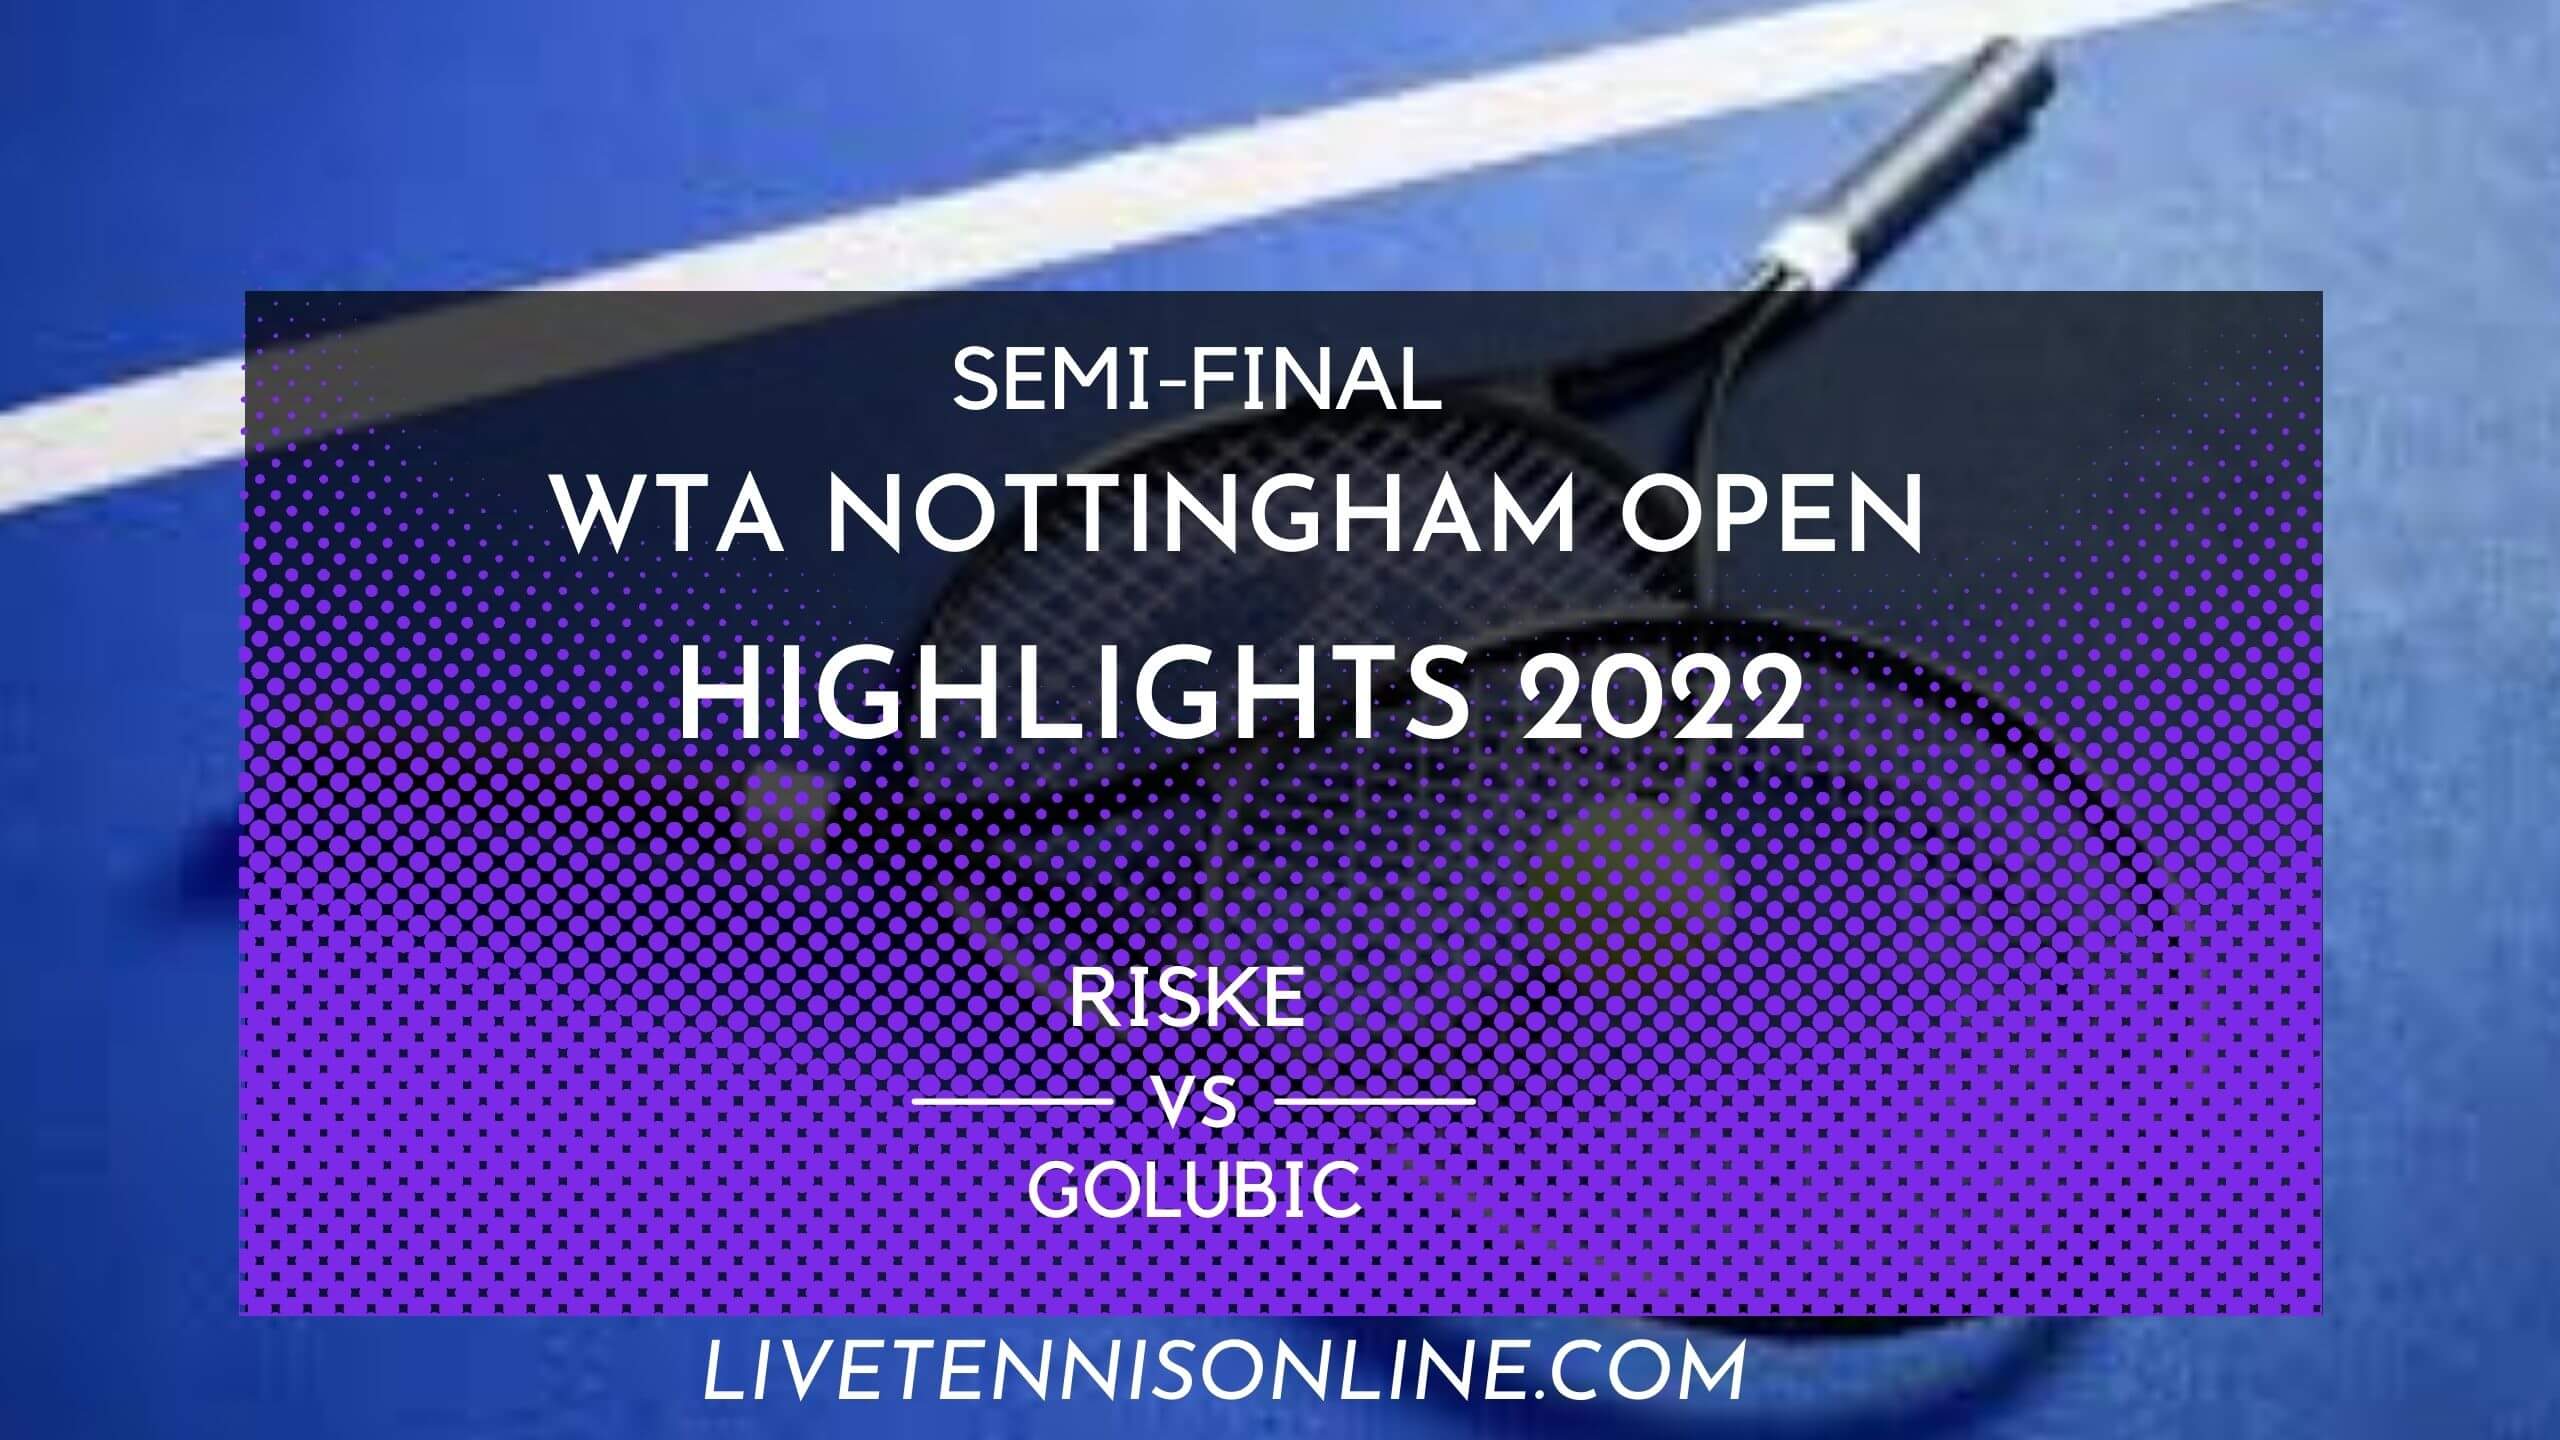 Riske Vs Golubic SF Highlights 2022 Nottingham Open